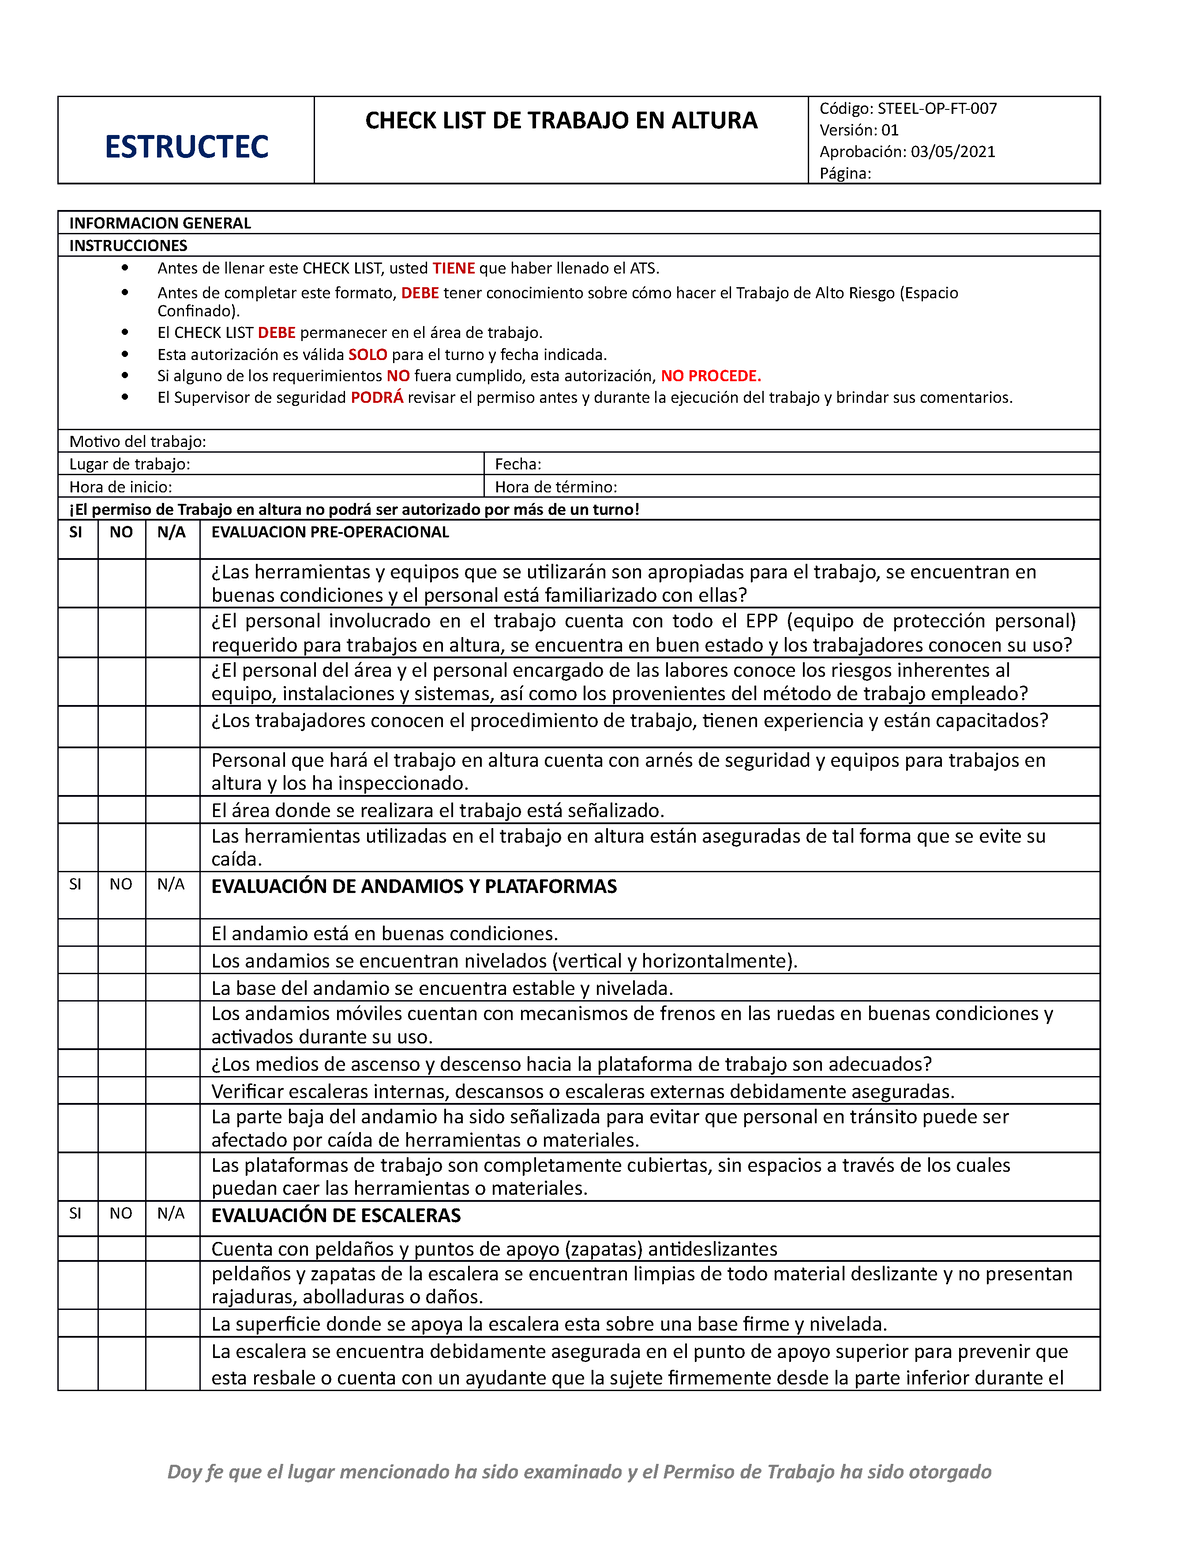 Ft Formato De Checklist De Trabajo En Altura 007 Estructec Check List De Trabajo En Altura 